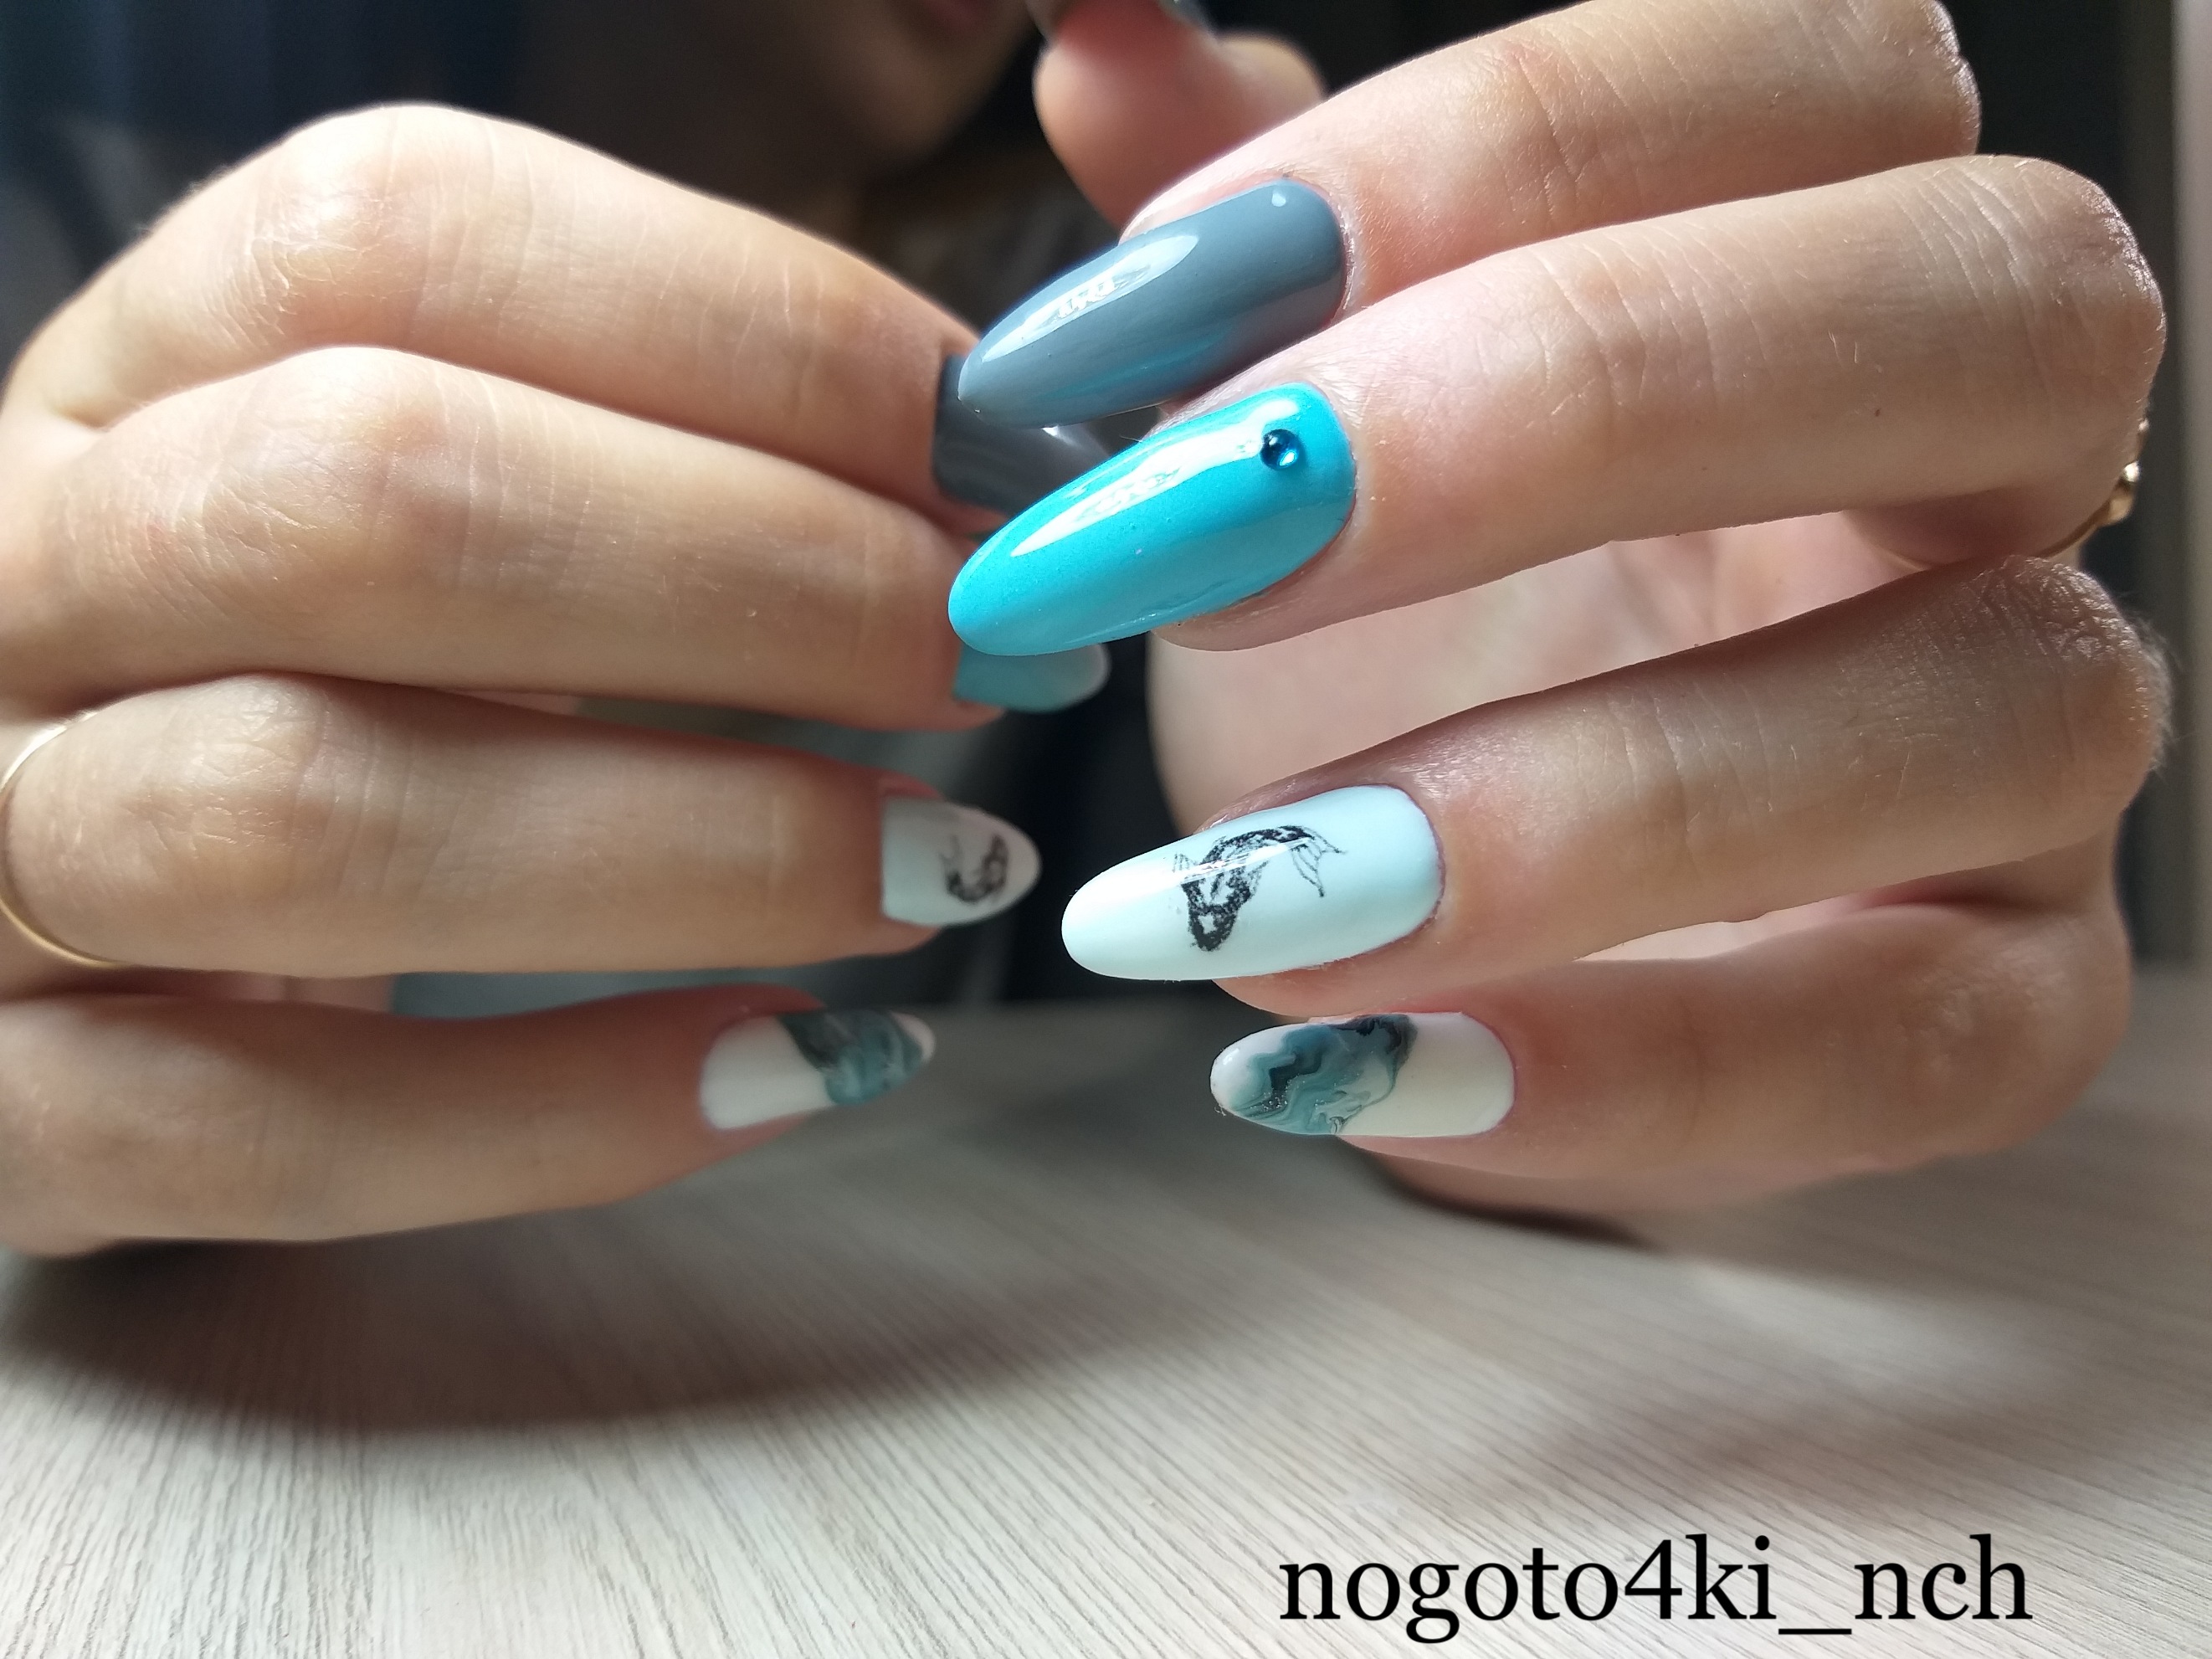 Маникюр с морским дизайном и слайдерами в голубом цвете на длинные ногти.